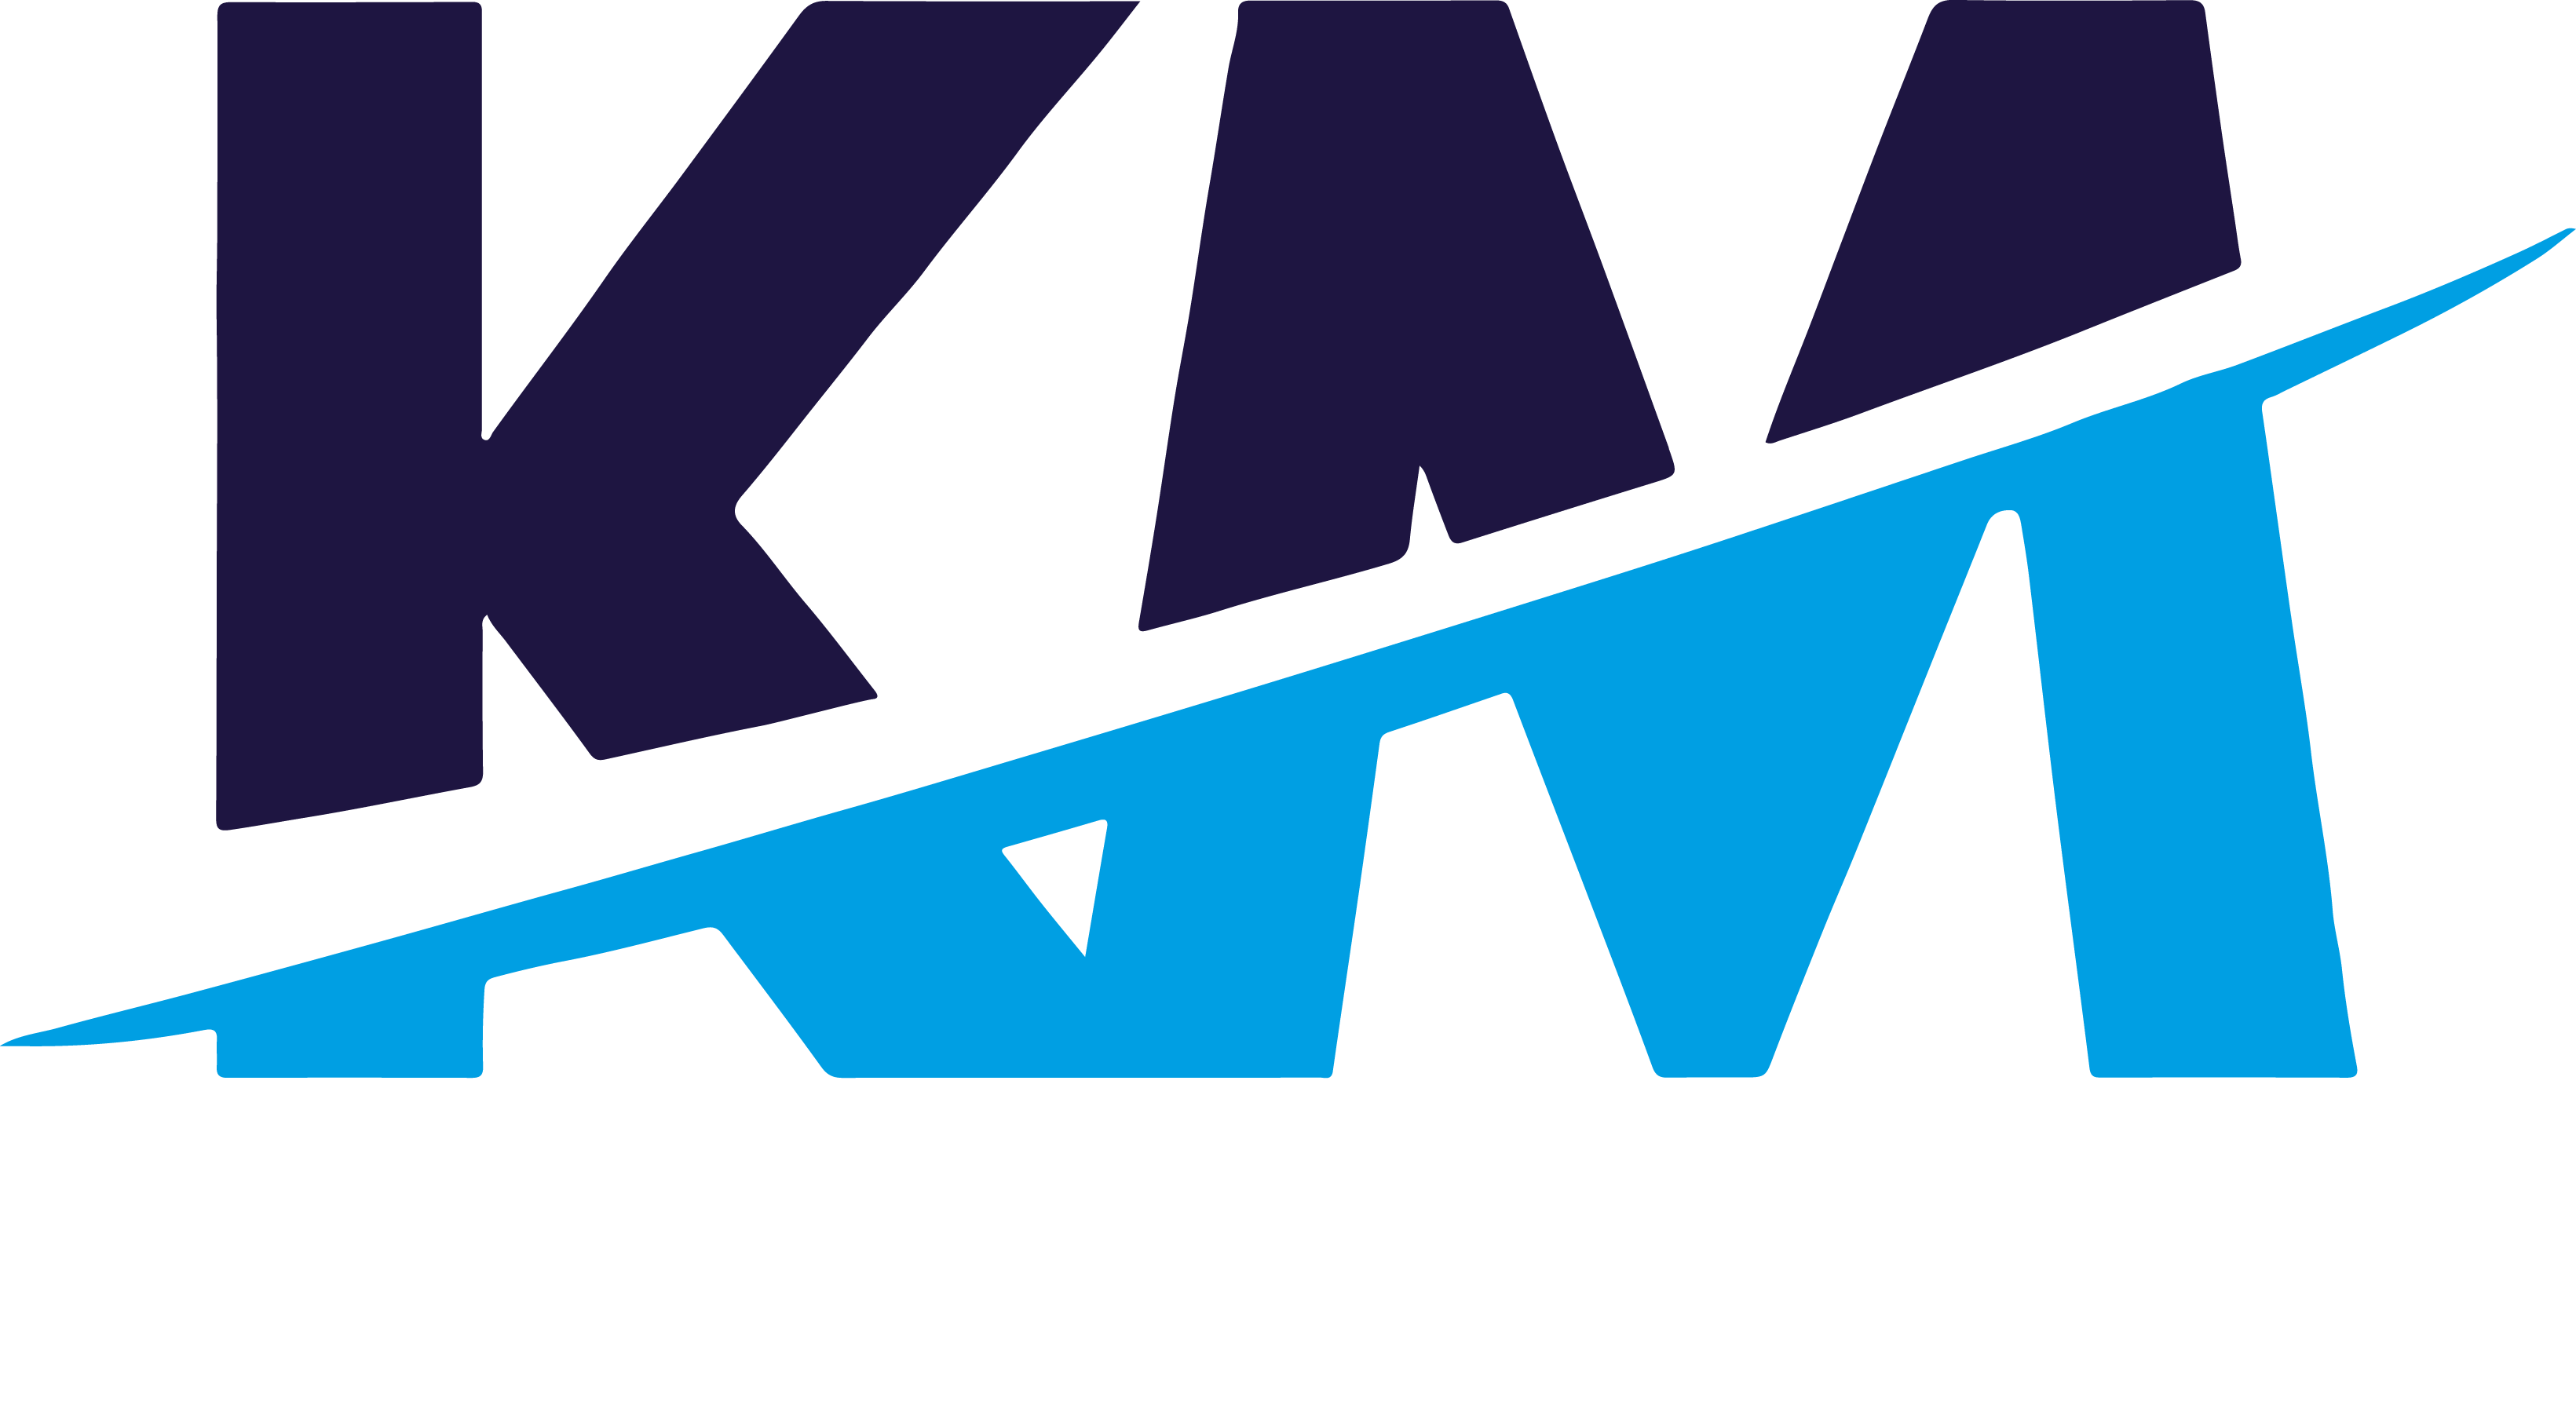 Km логотип. Км профиль логотип. Картинка km. Km лого Design.